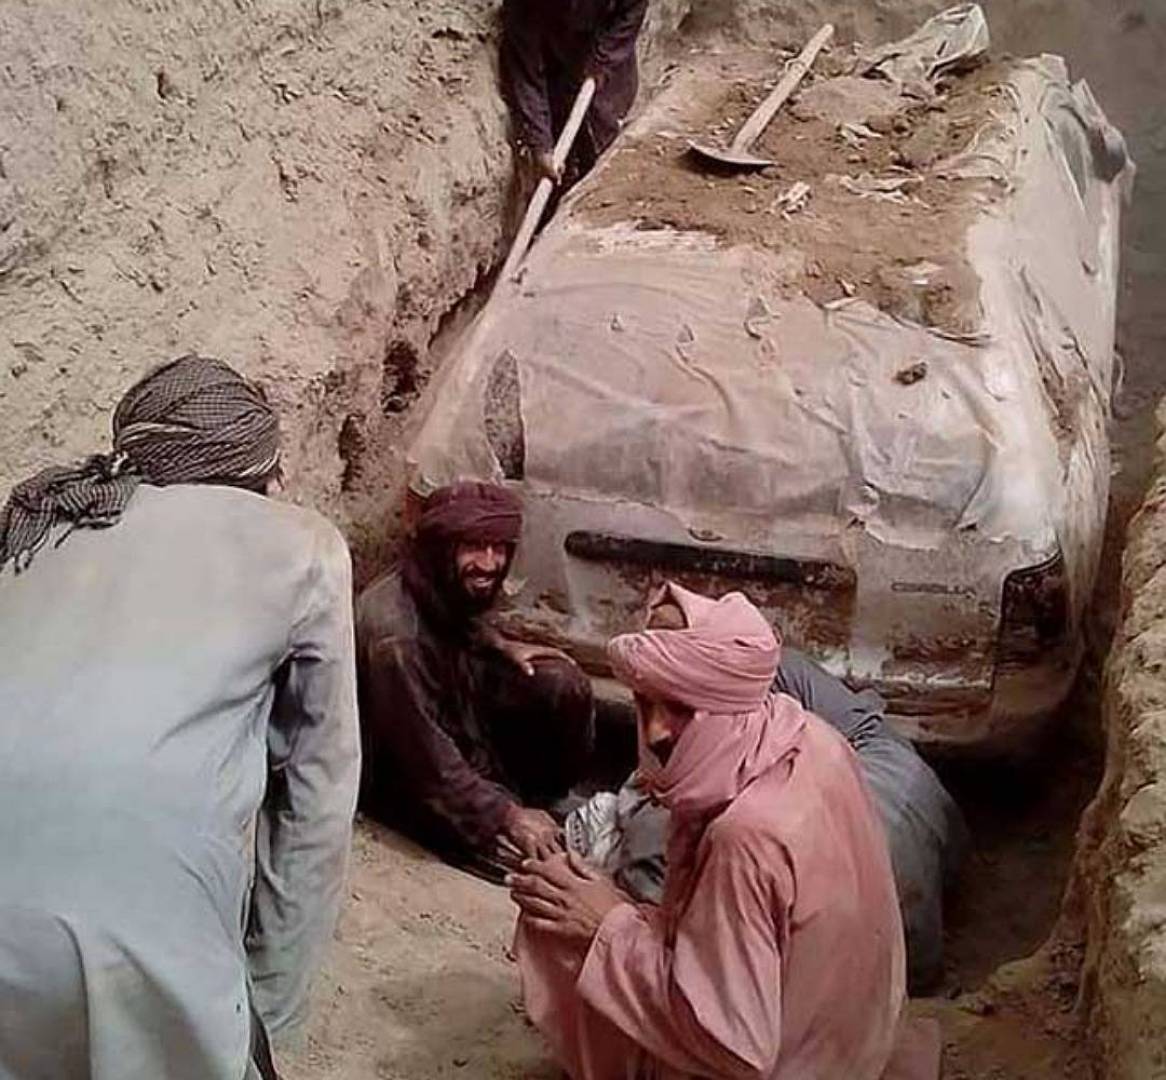 بالصور: بعد 21 عاما من طمرها...طالبان تكشف لسيارة التي استخدمها الملا محمد عمر للفرار من الضربات الأمريكية بعد اعتداءات 11 أيلول